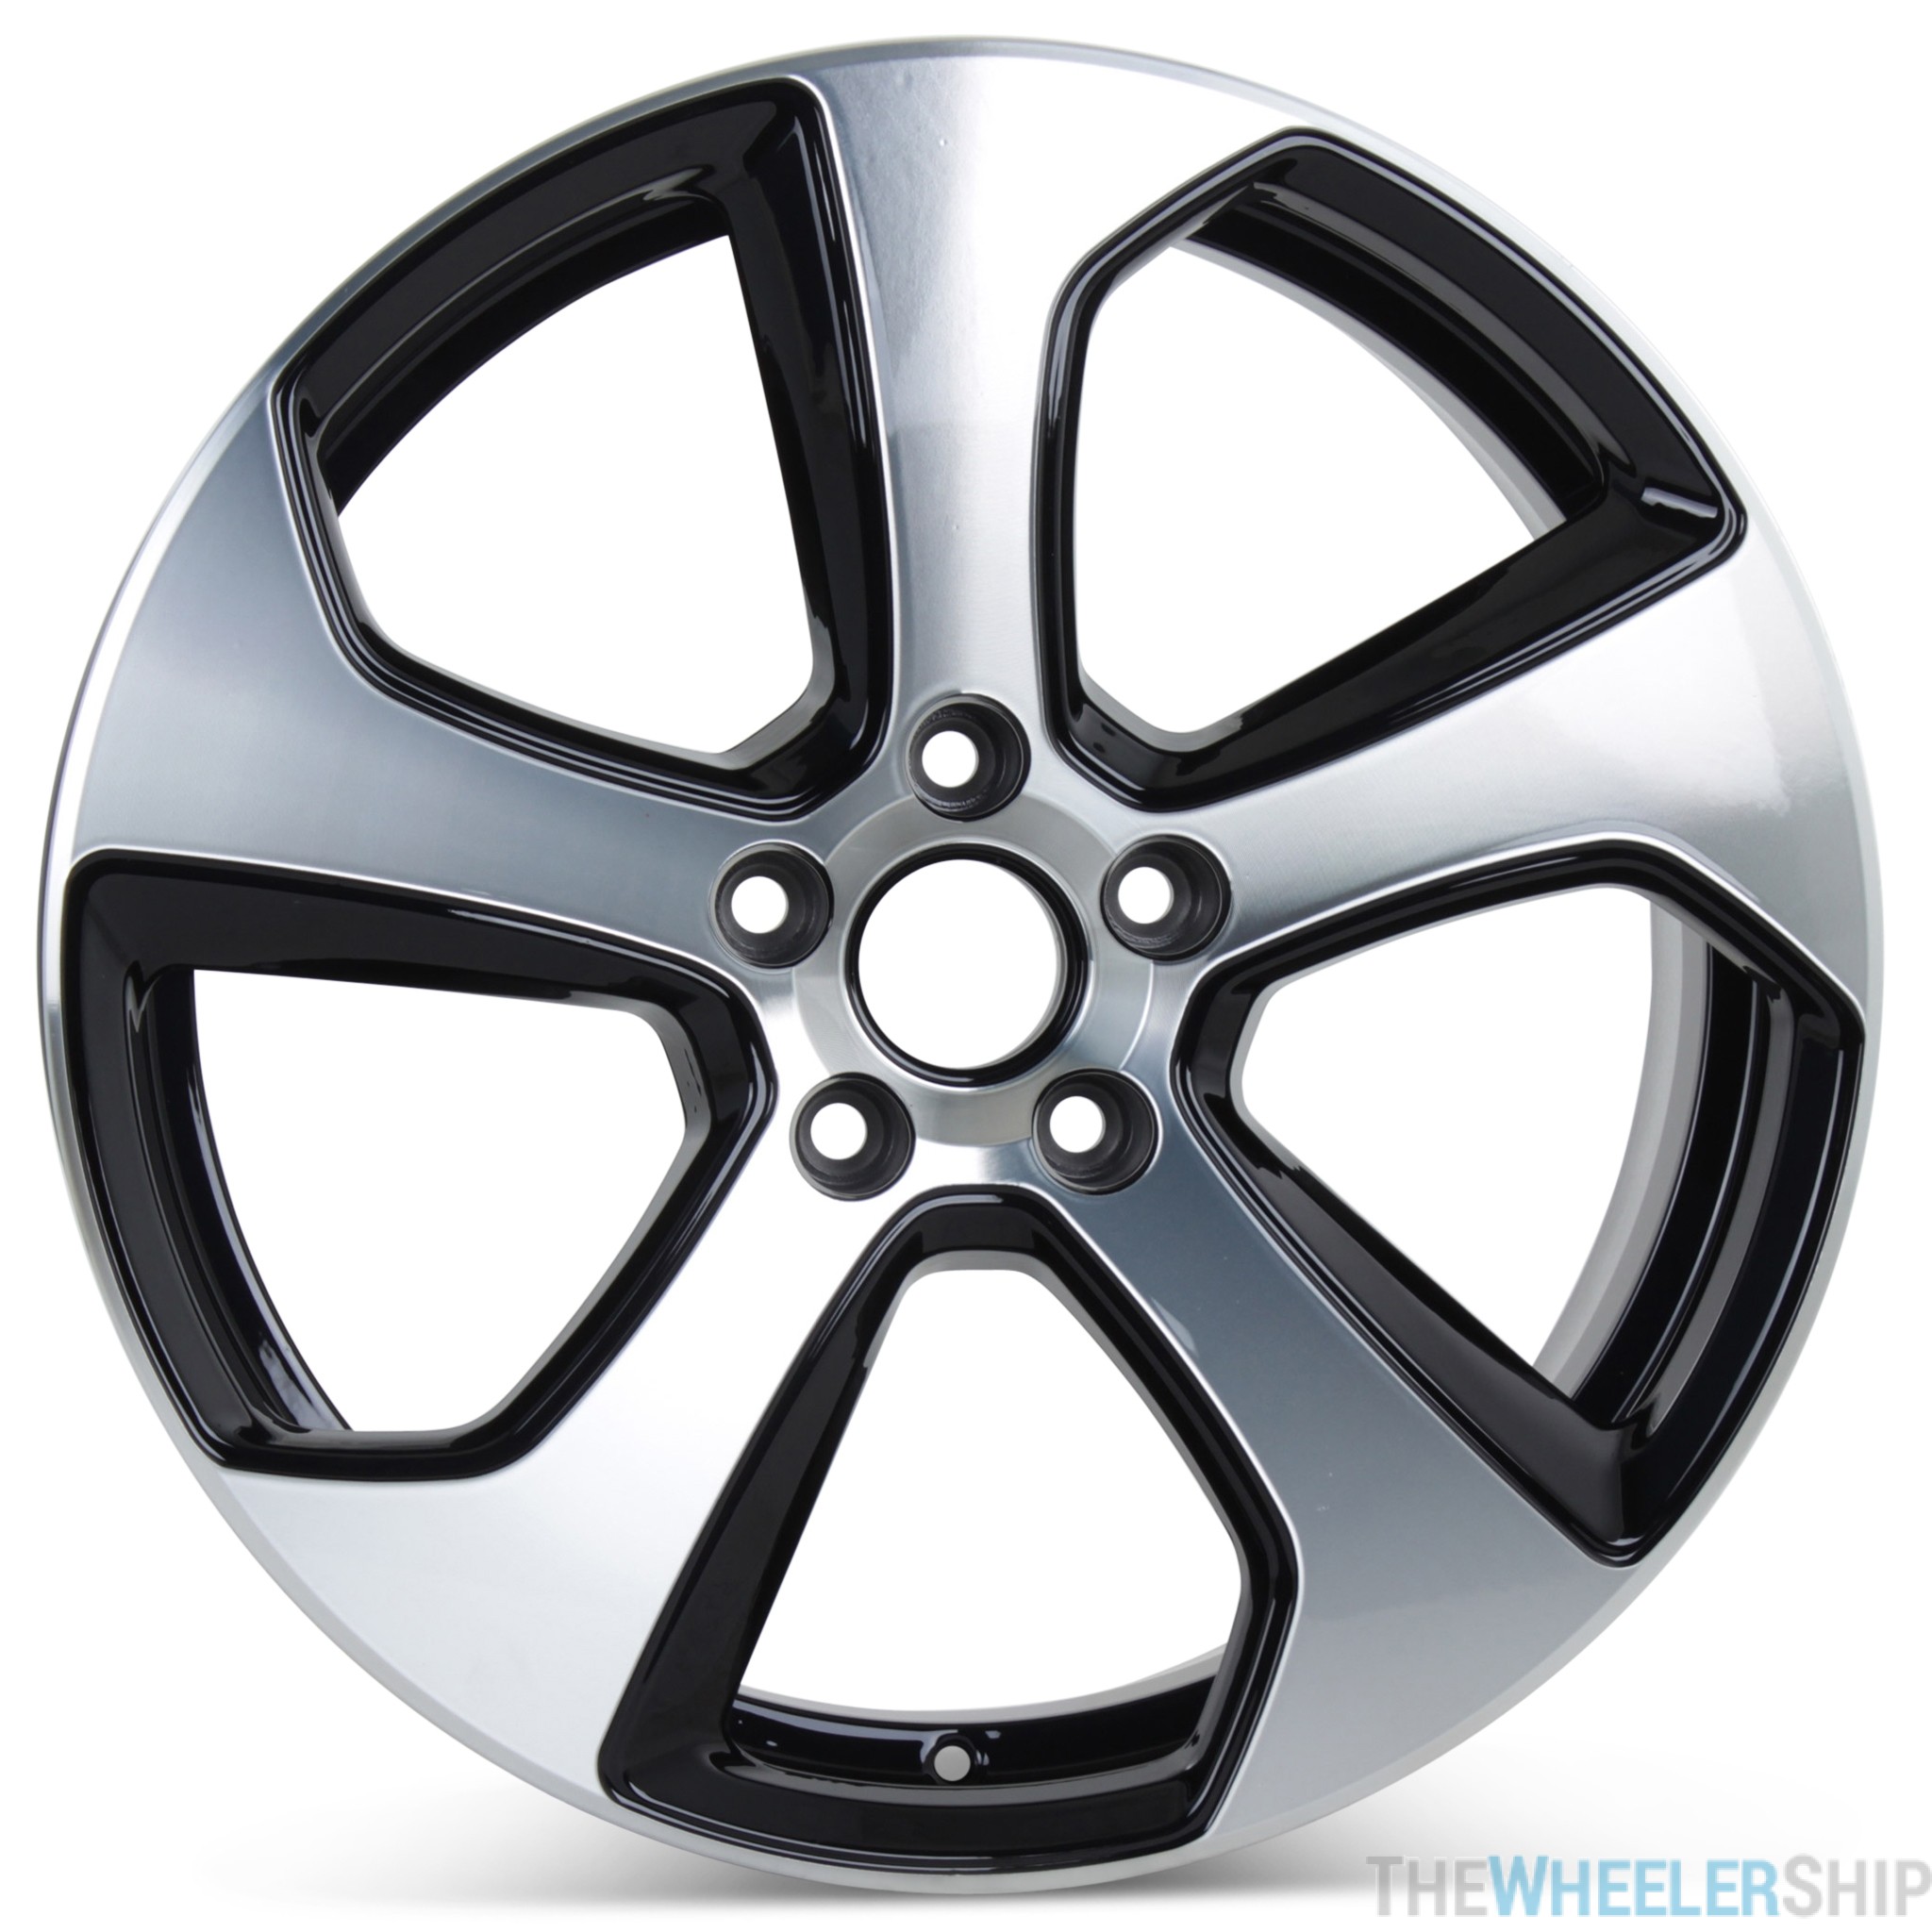 20142018 VW Wheels Set of 4 18" Volkswagen Golf Rims